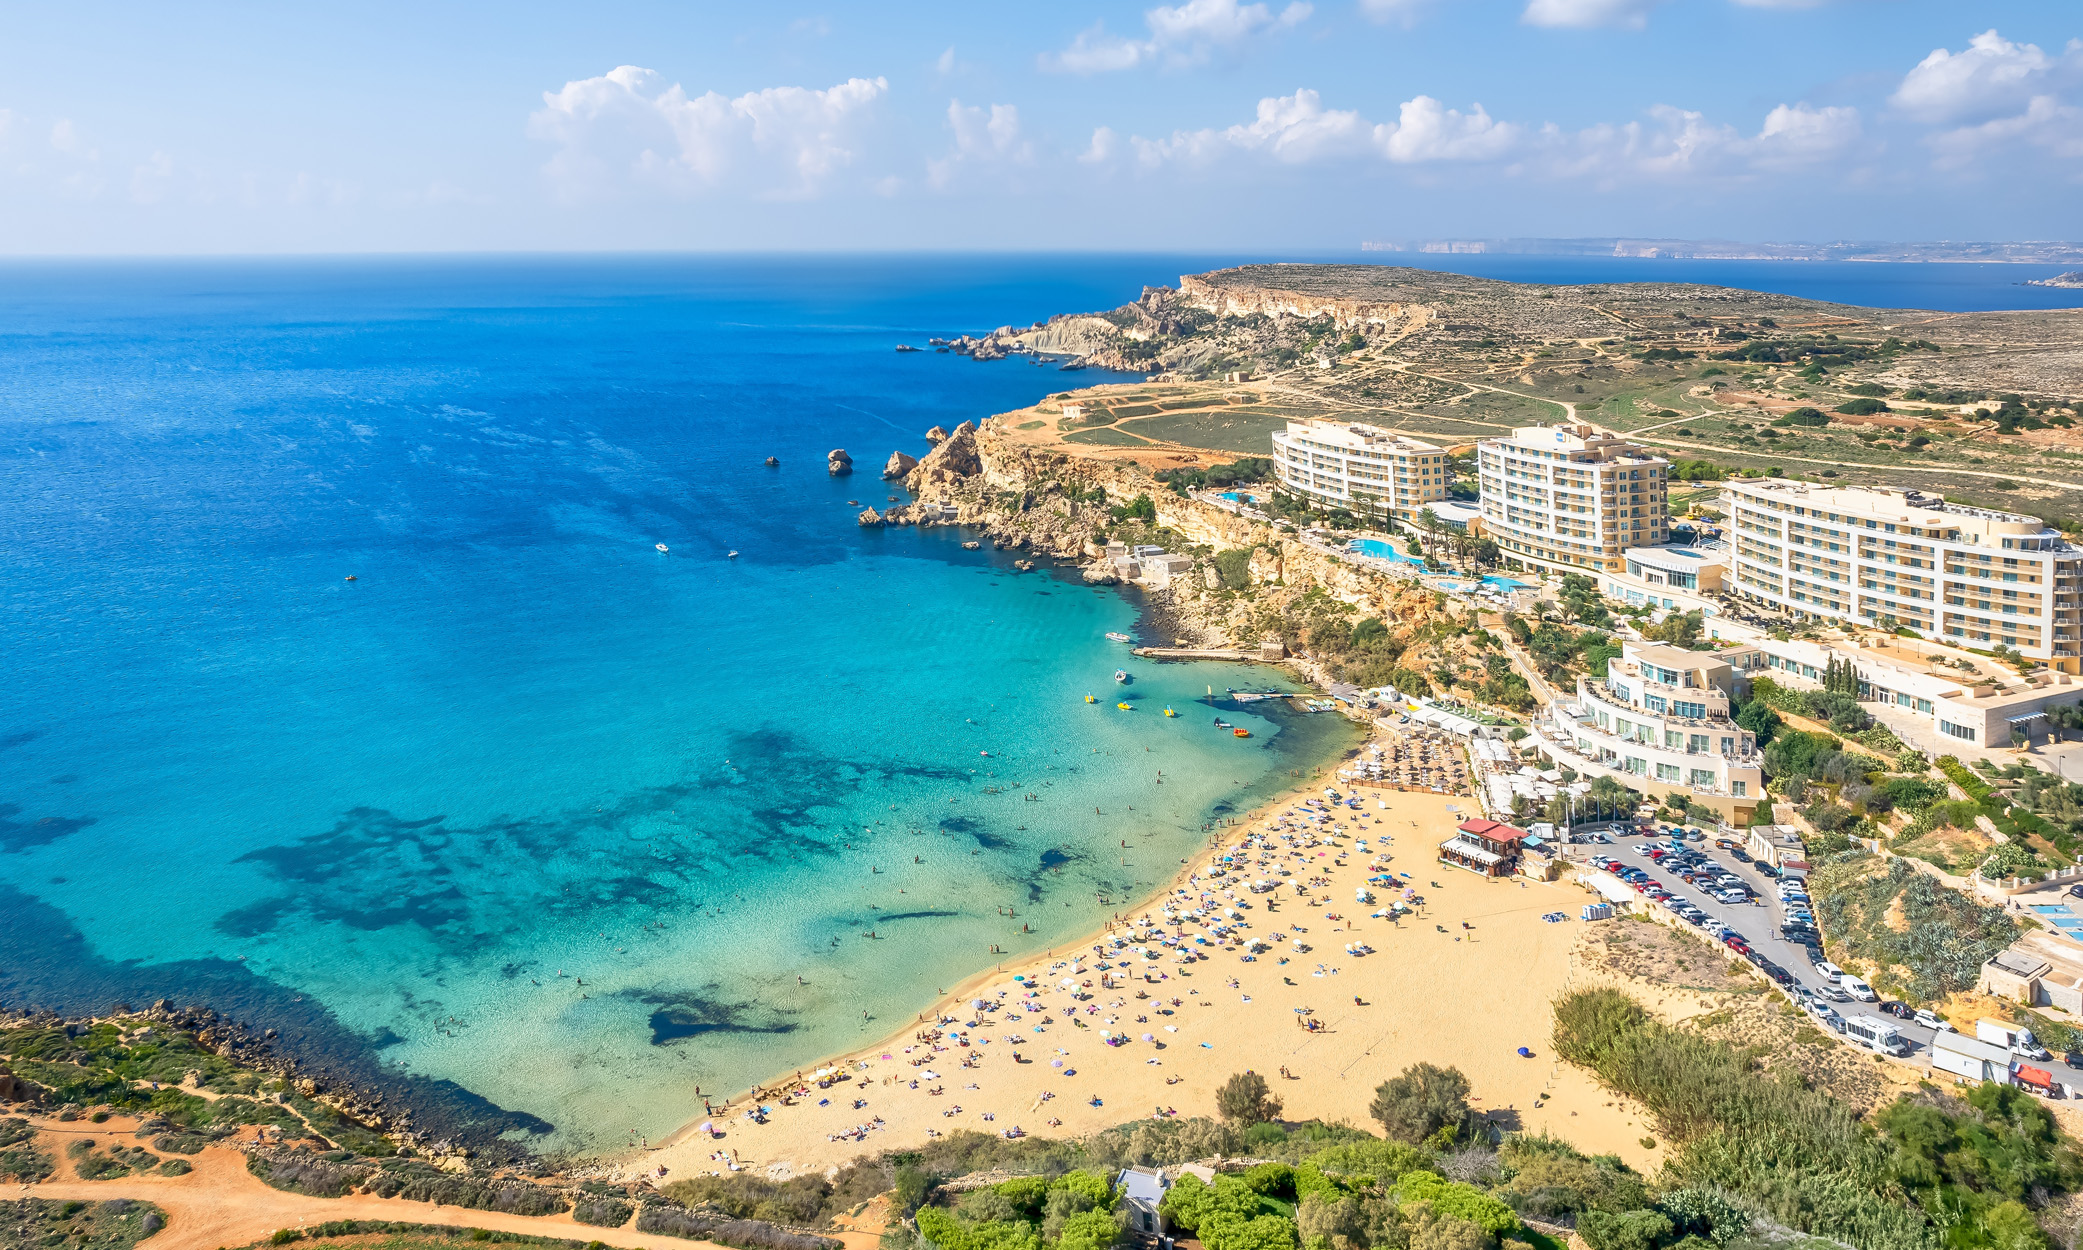 Malta, AB altın vizesi sunan 4 ülkeden 1'idir.